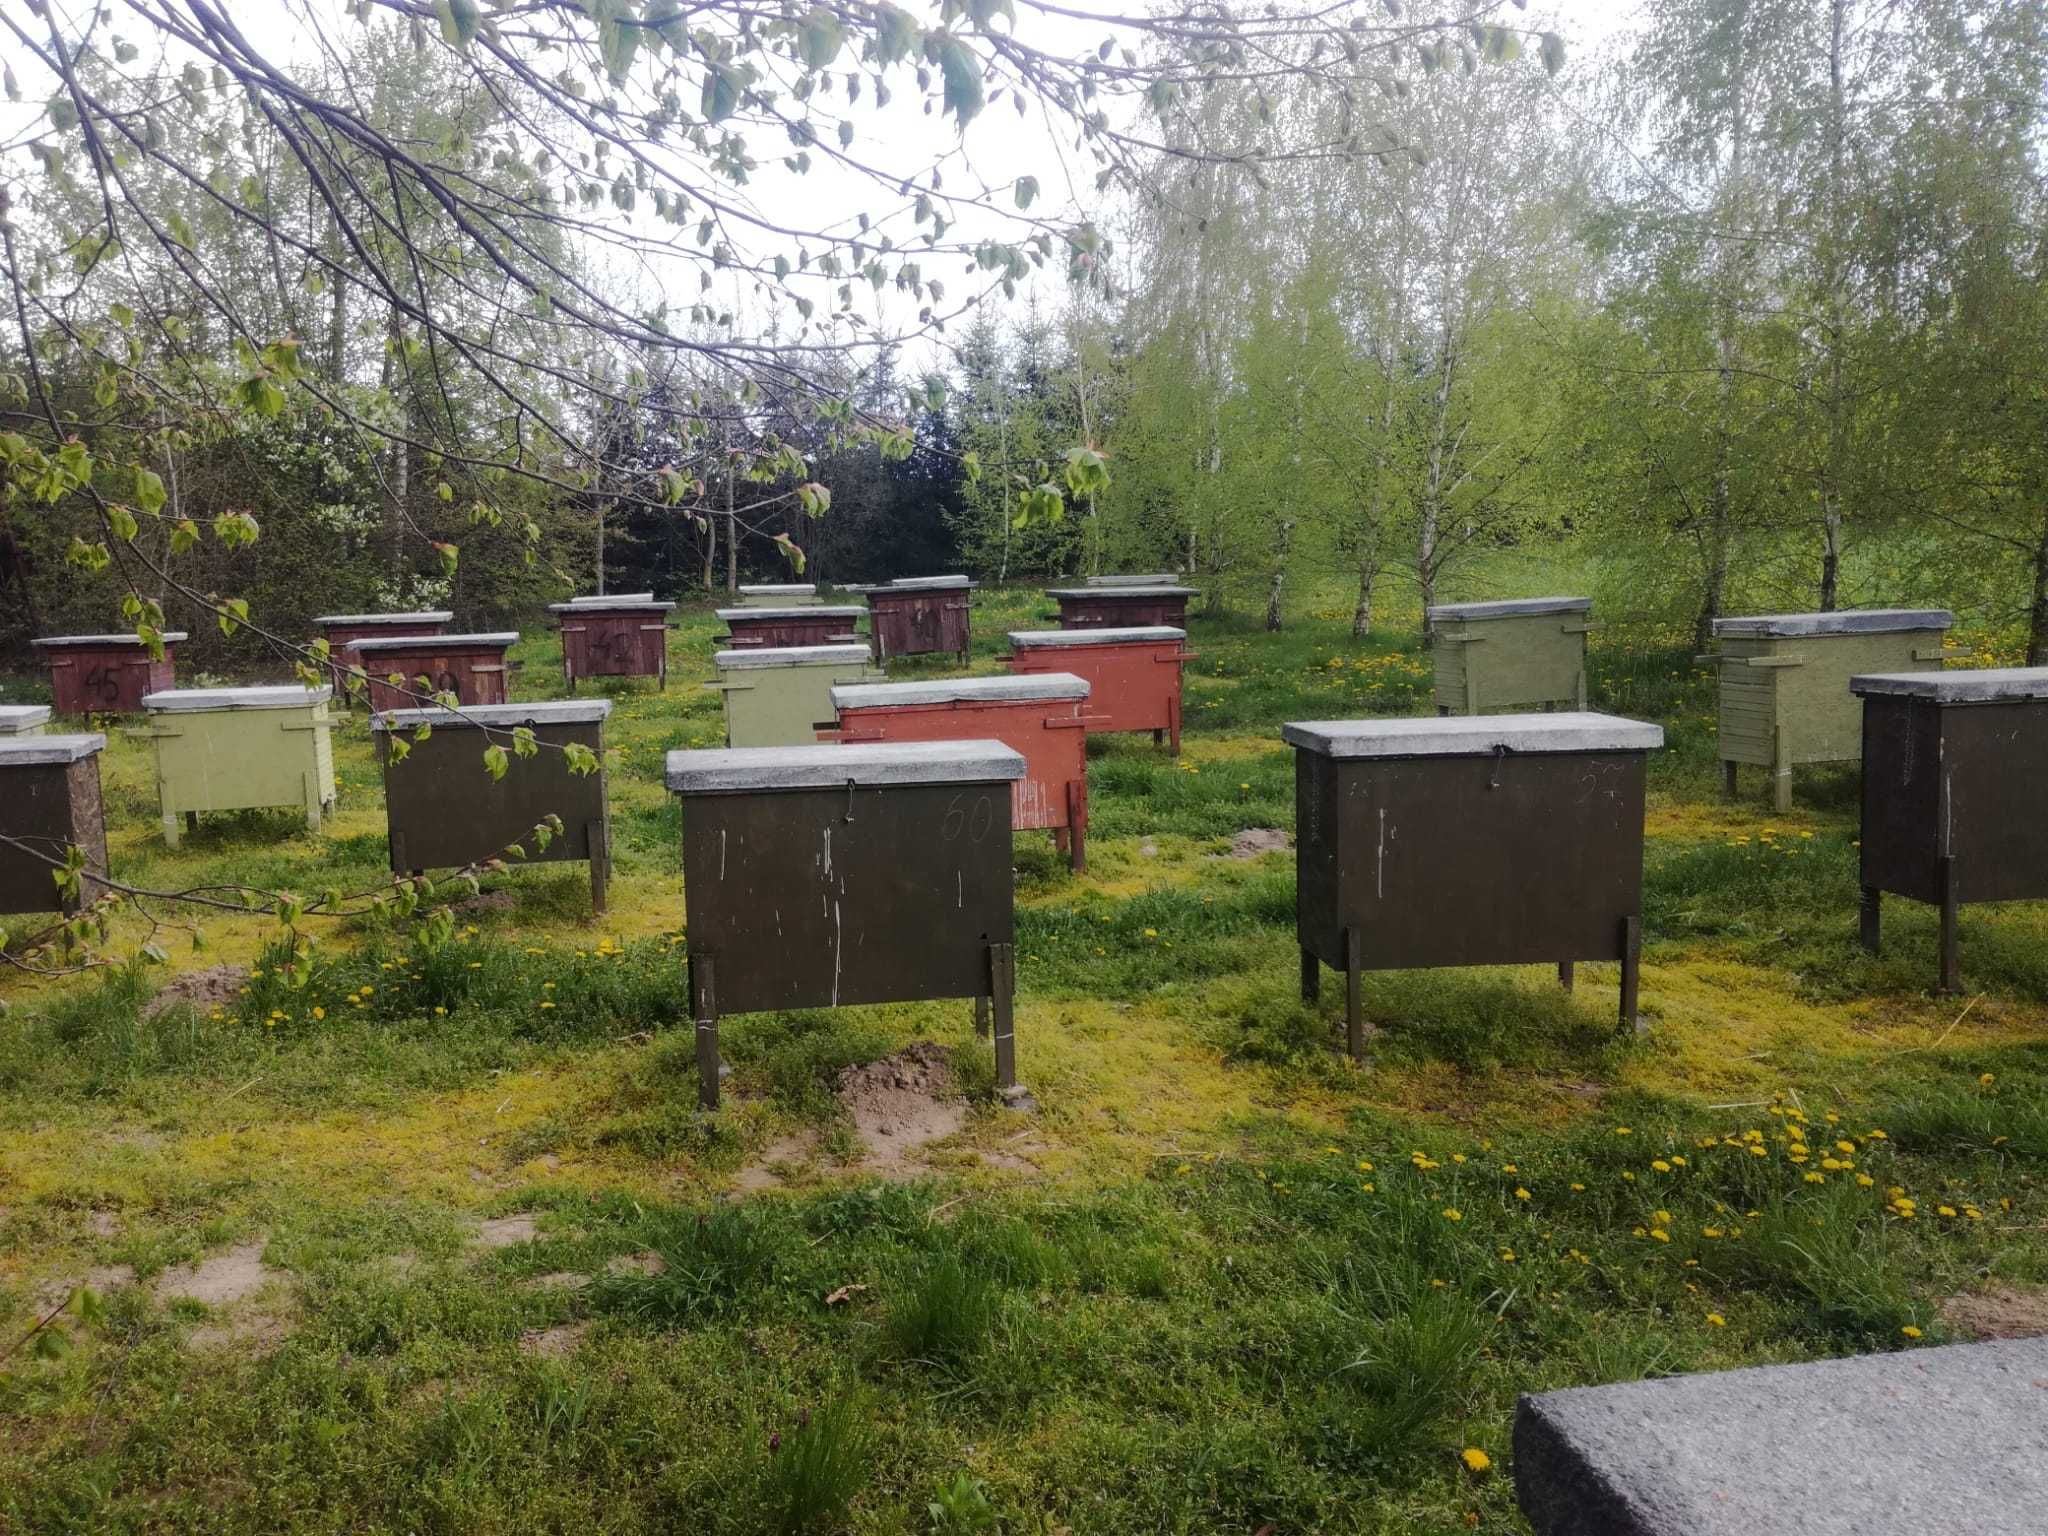 Pszczoły, rodziny pszczele w ulach warszawskich